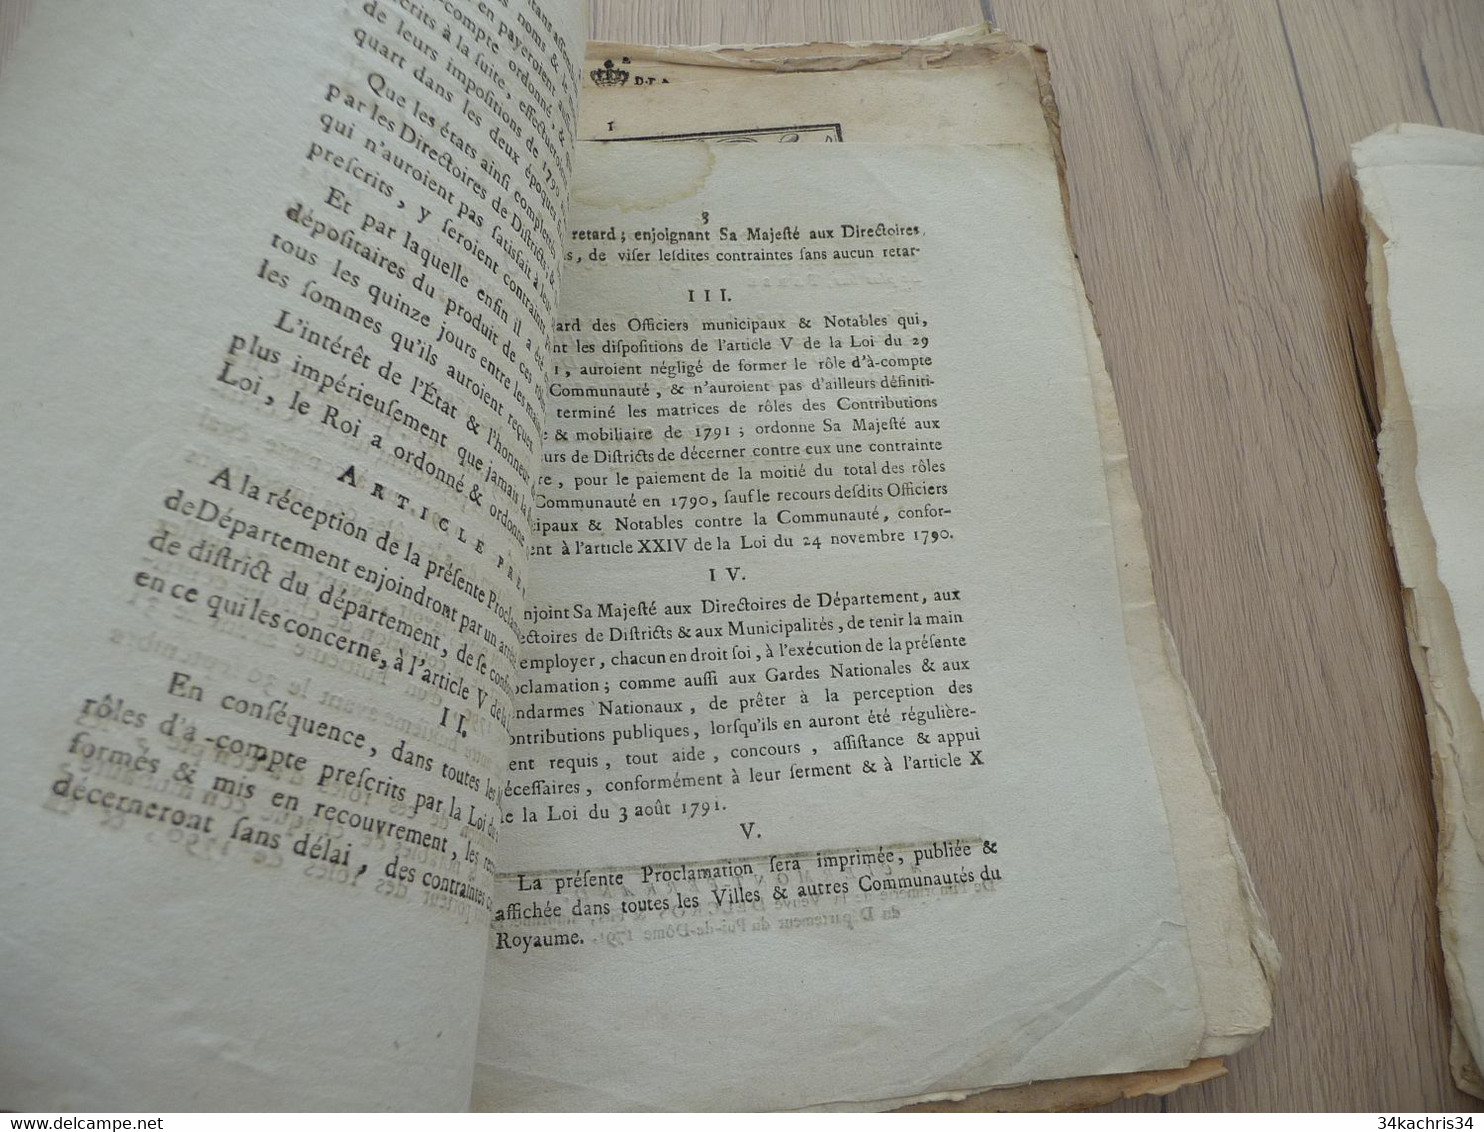 Proclamation Du Roi 15/12/1791 Accélération Des Recouvrements De Rôles - Wetten & Decreten